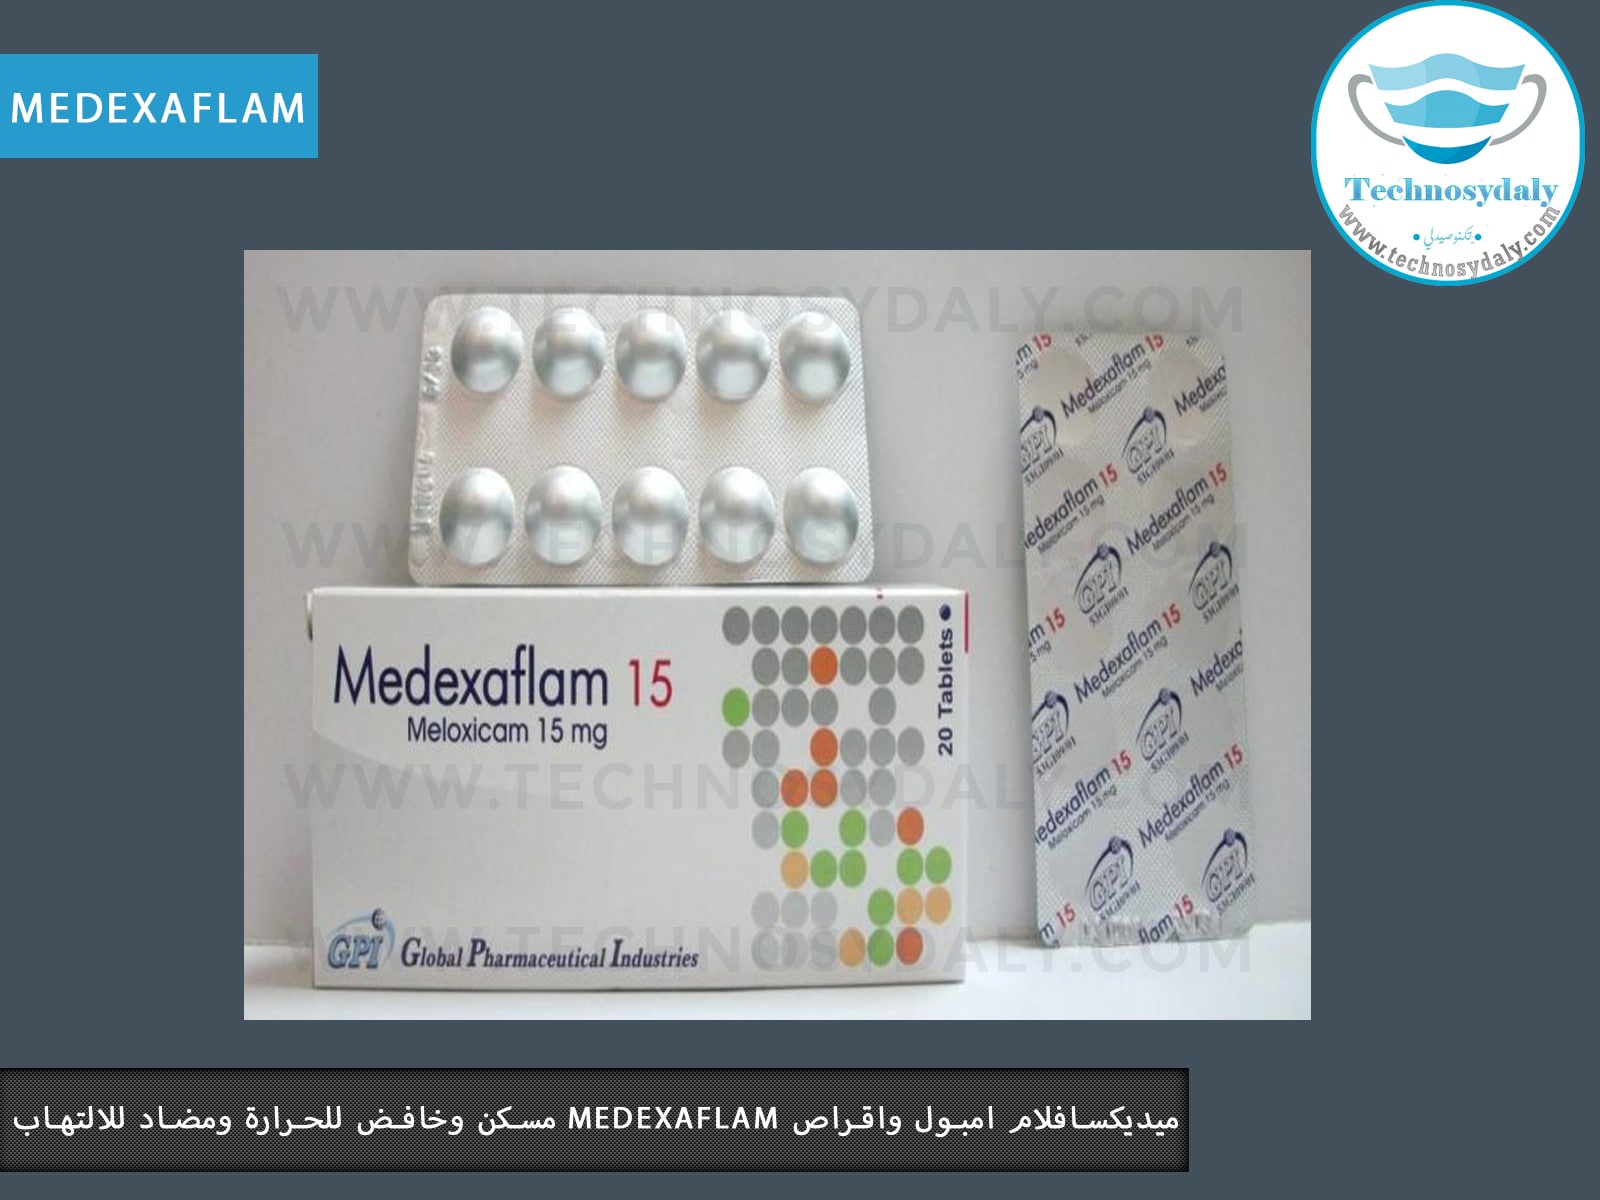 ميديكسافلام امبول واقراص MEDEXAFLAM 15 mg مسكن وخافض للحرارة ومضاد للالتهاب